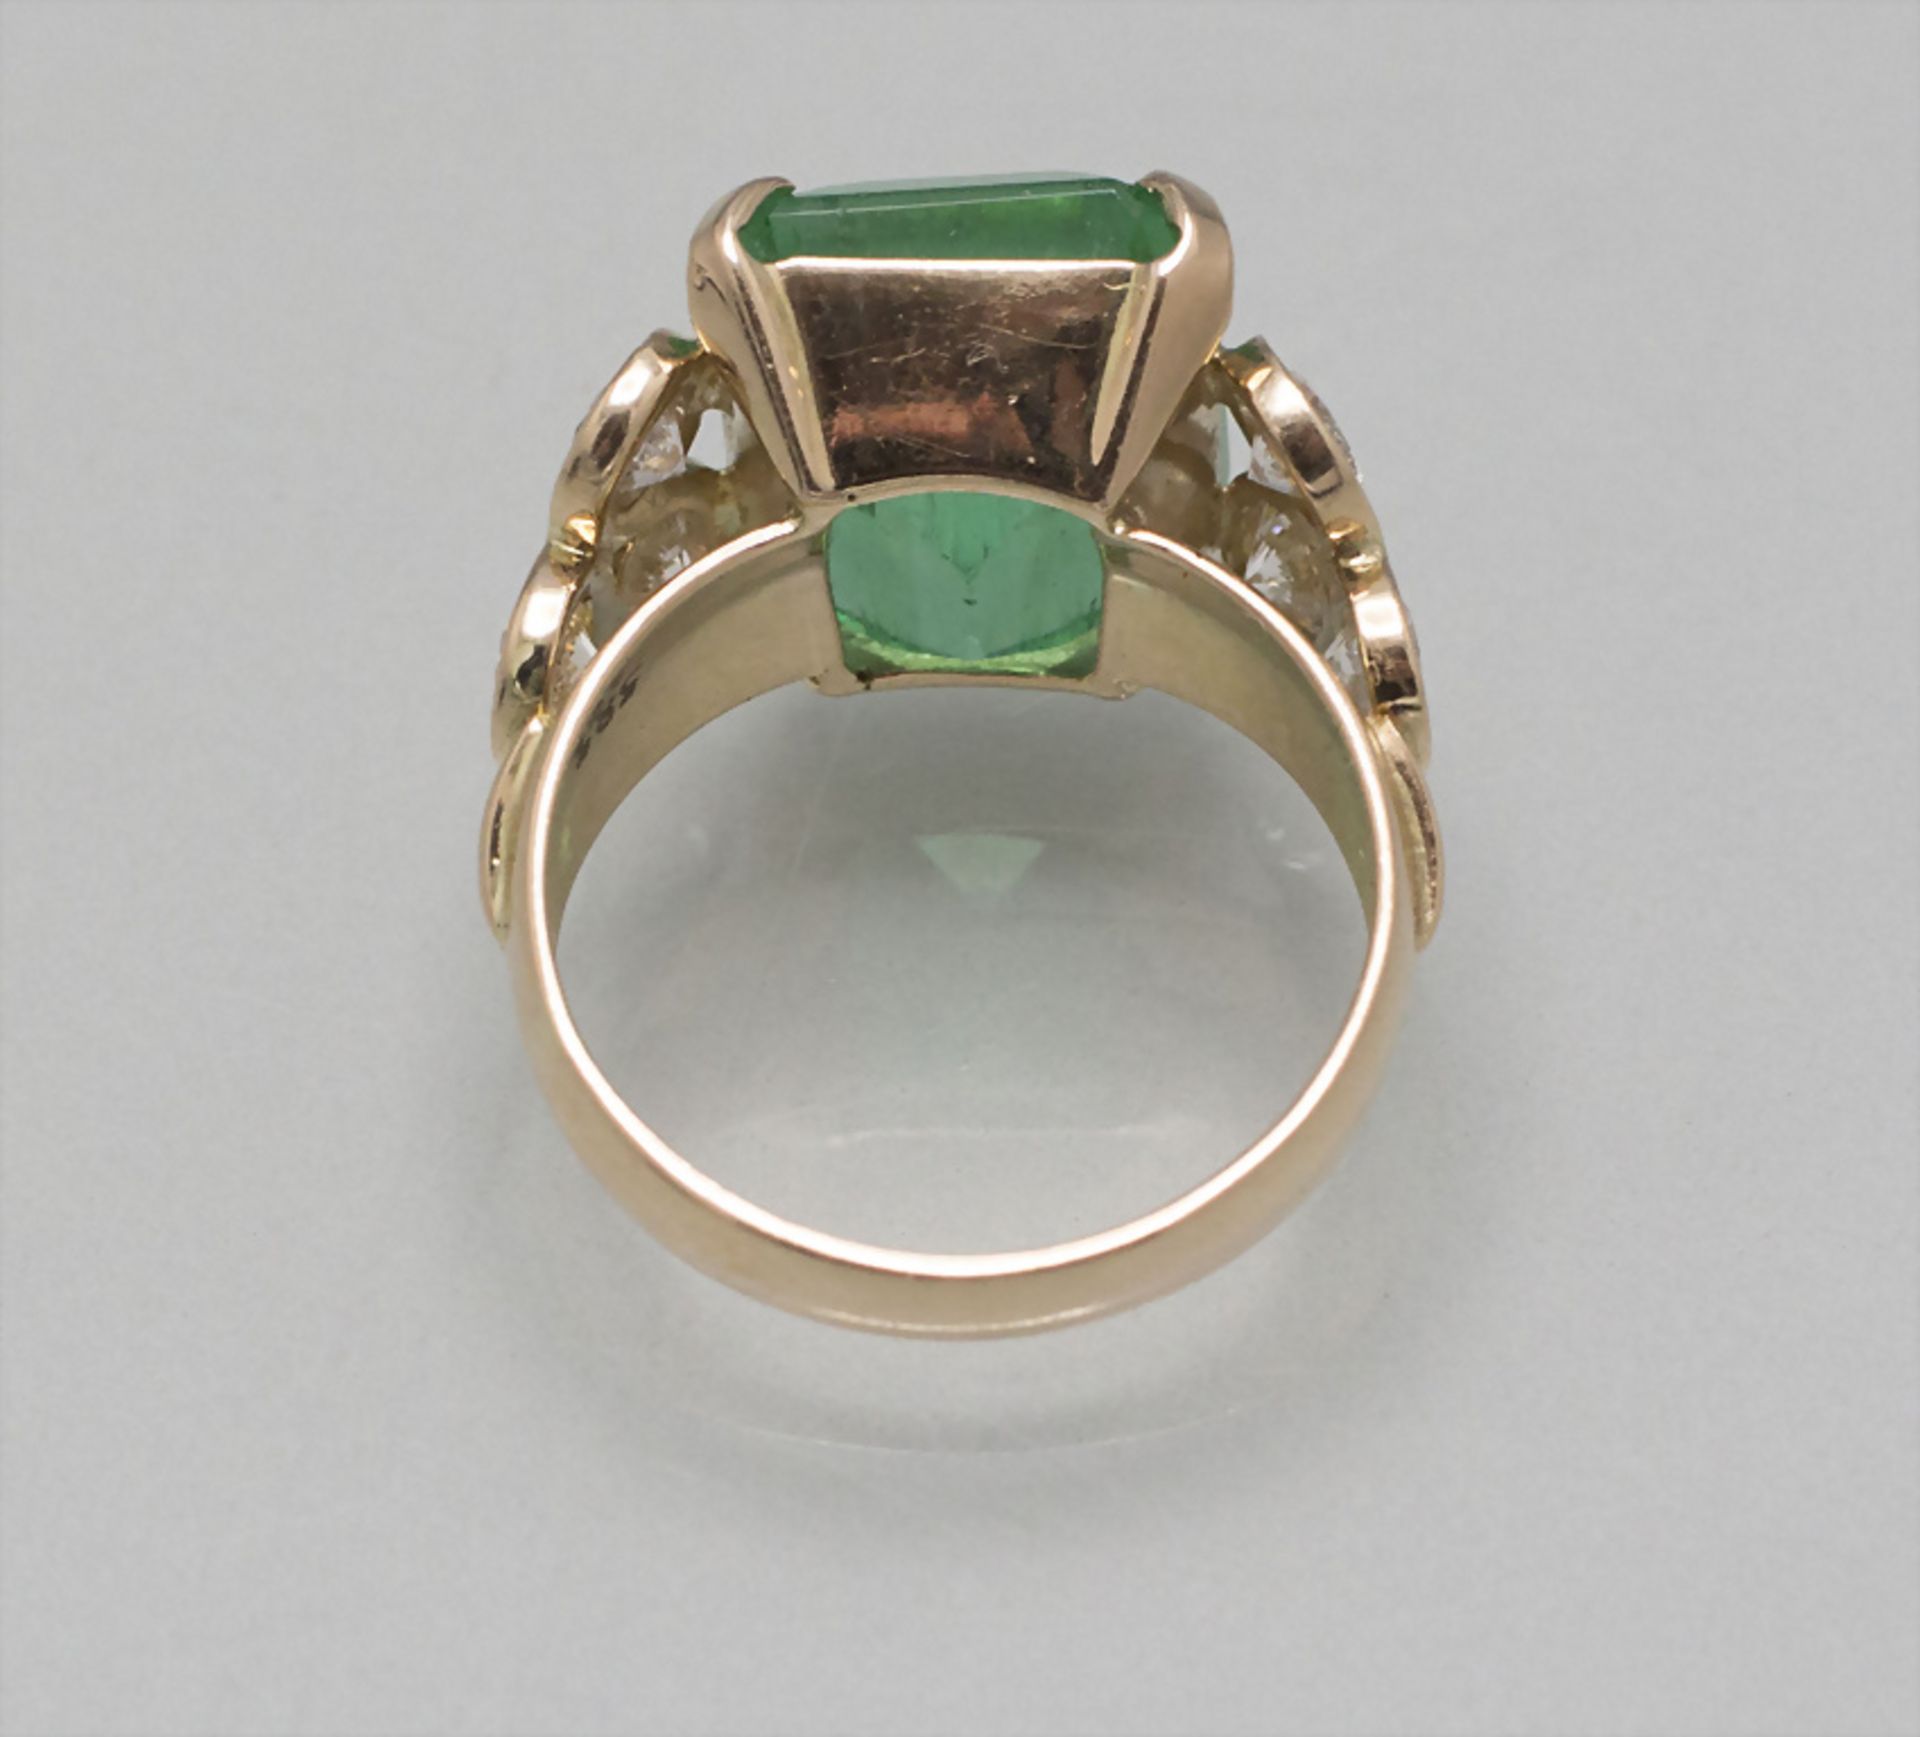 Damenring mit Smaragd und Diamanten / A ladies 14 ct gold ring with emerald and diamonds - Bild 2 aus 3